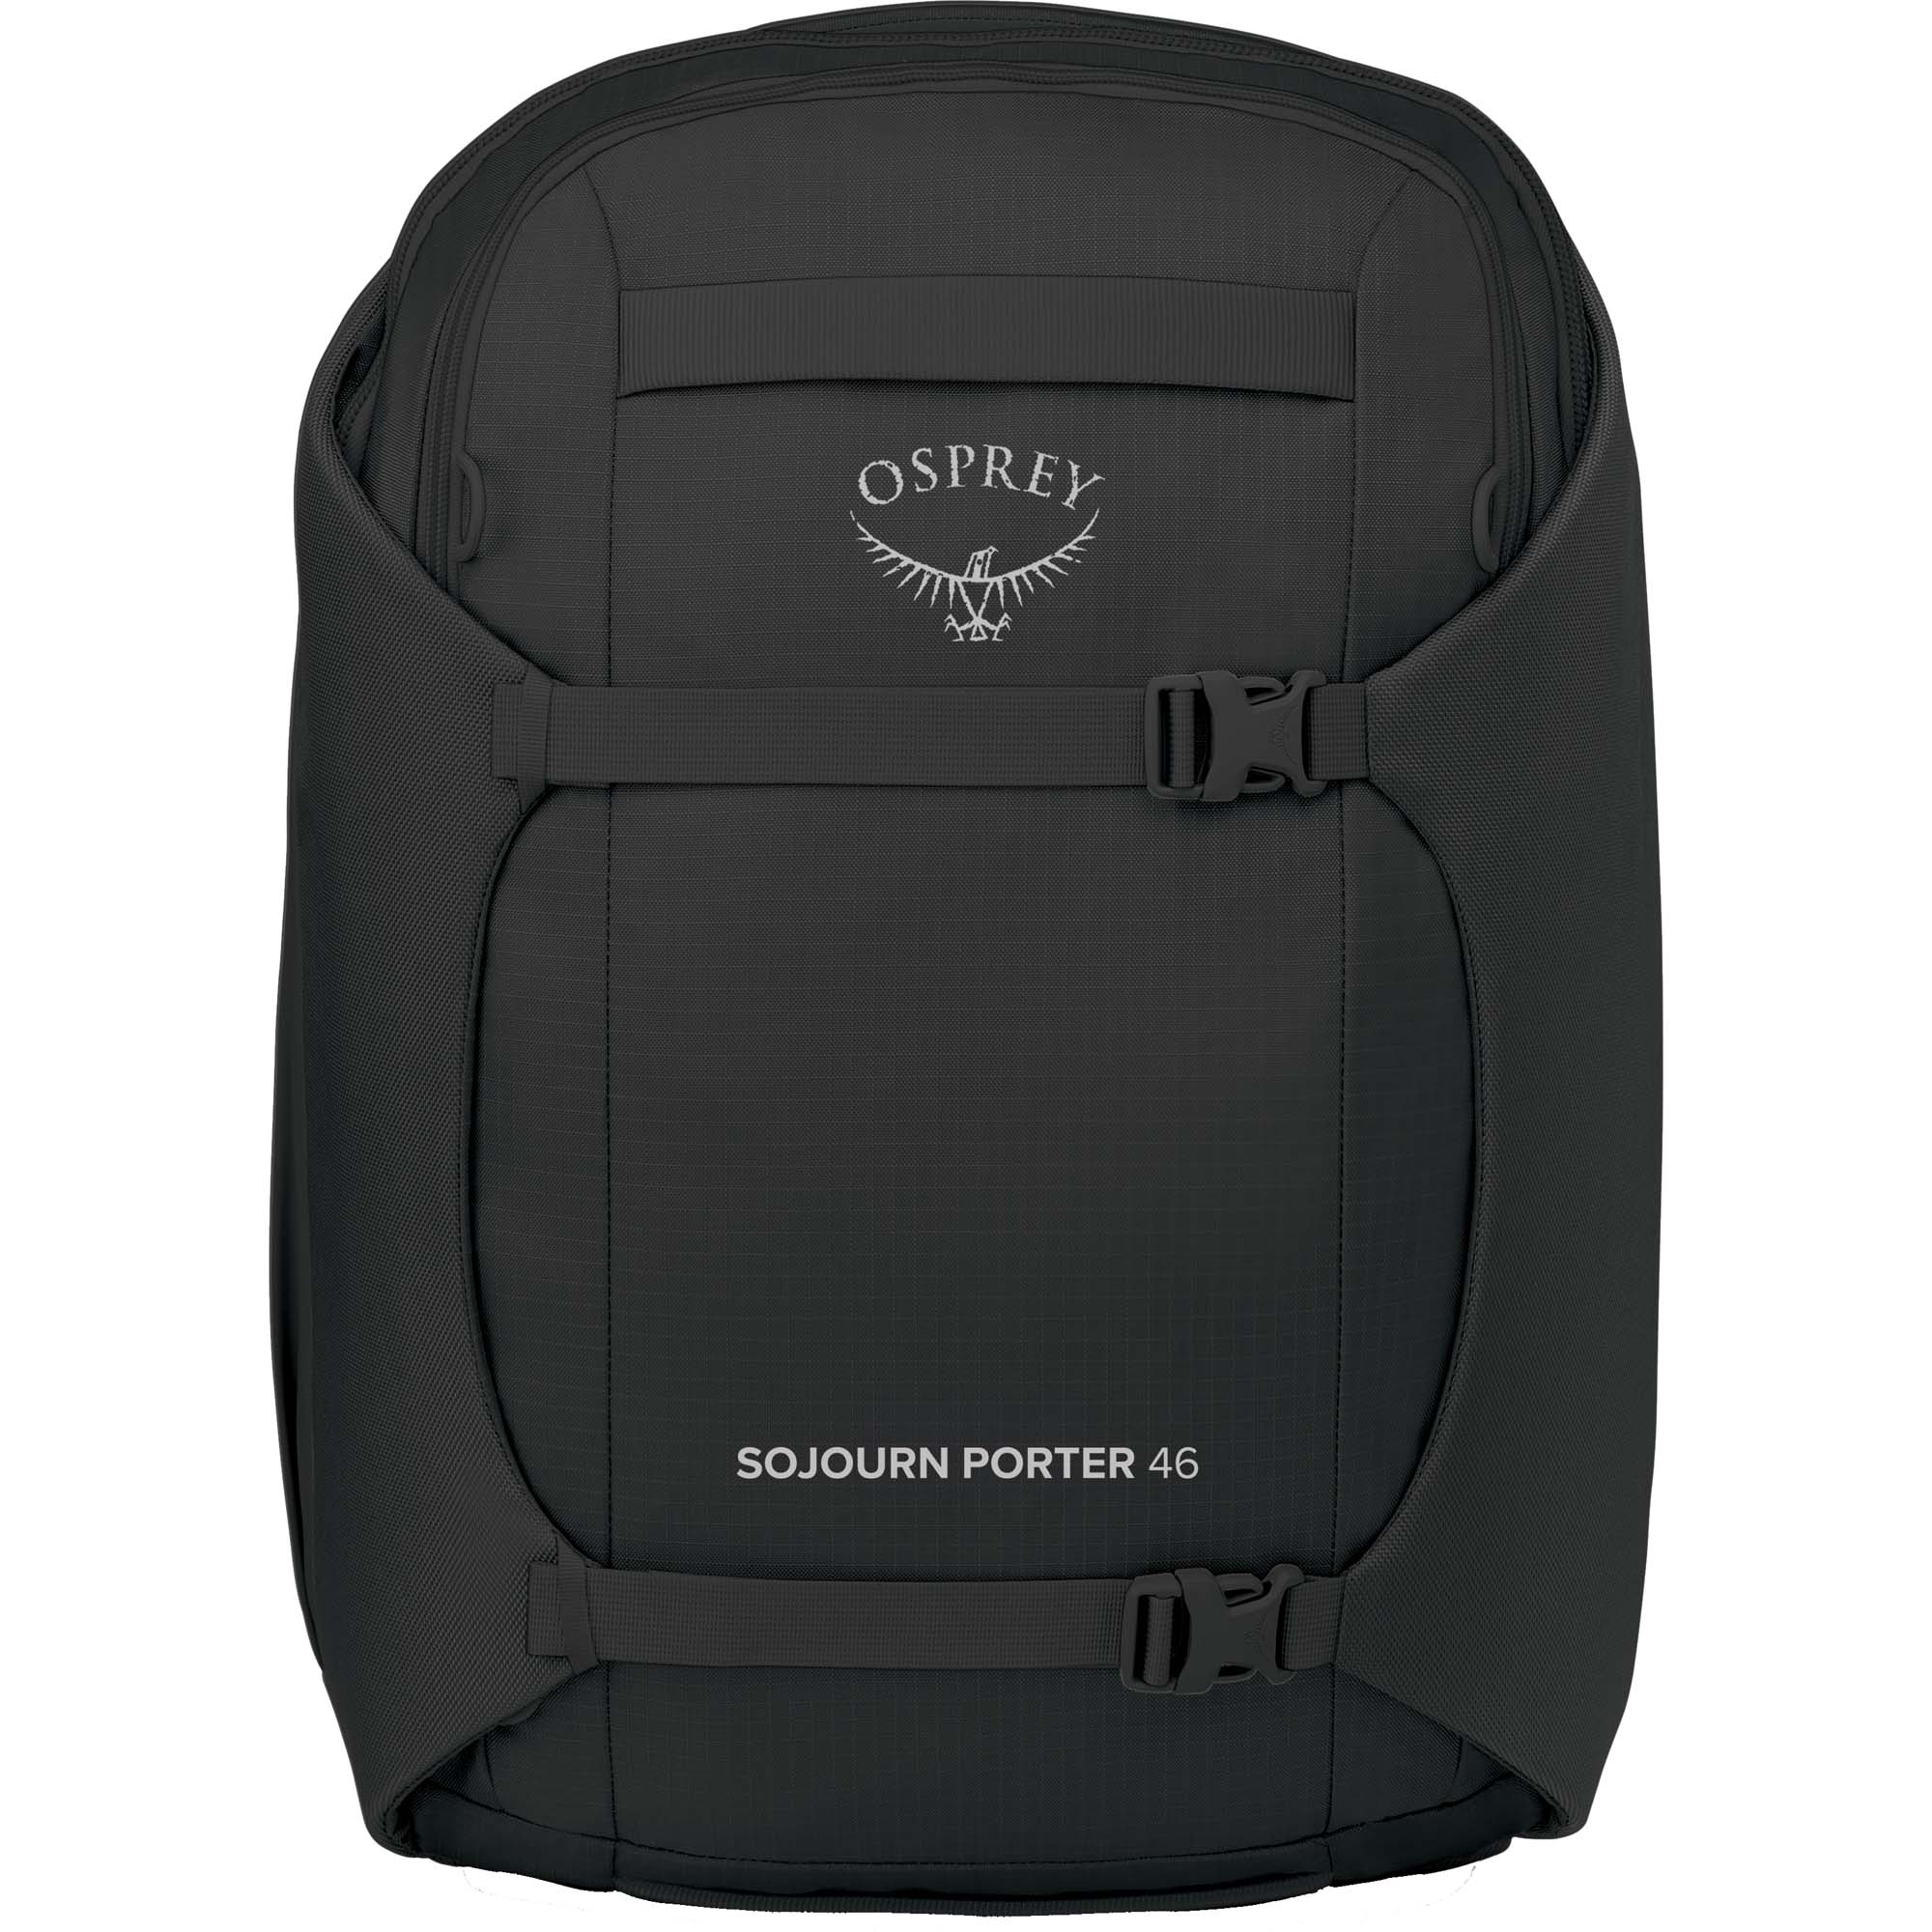 Osprey Sojourn Porter 46 Travel Backpack